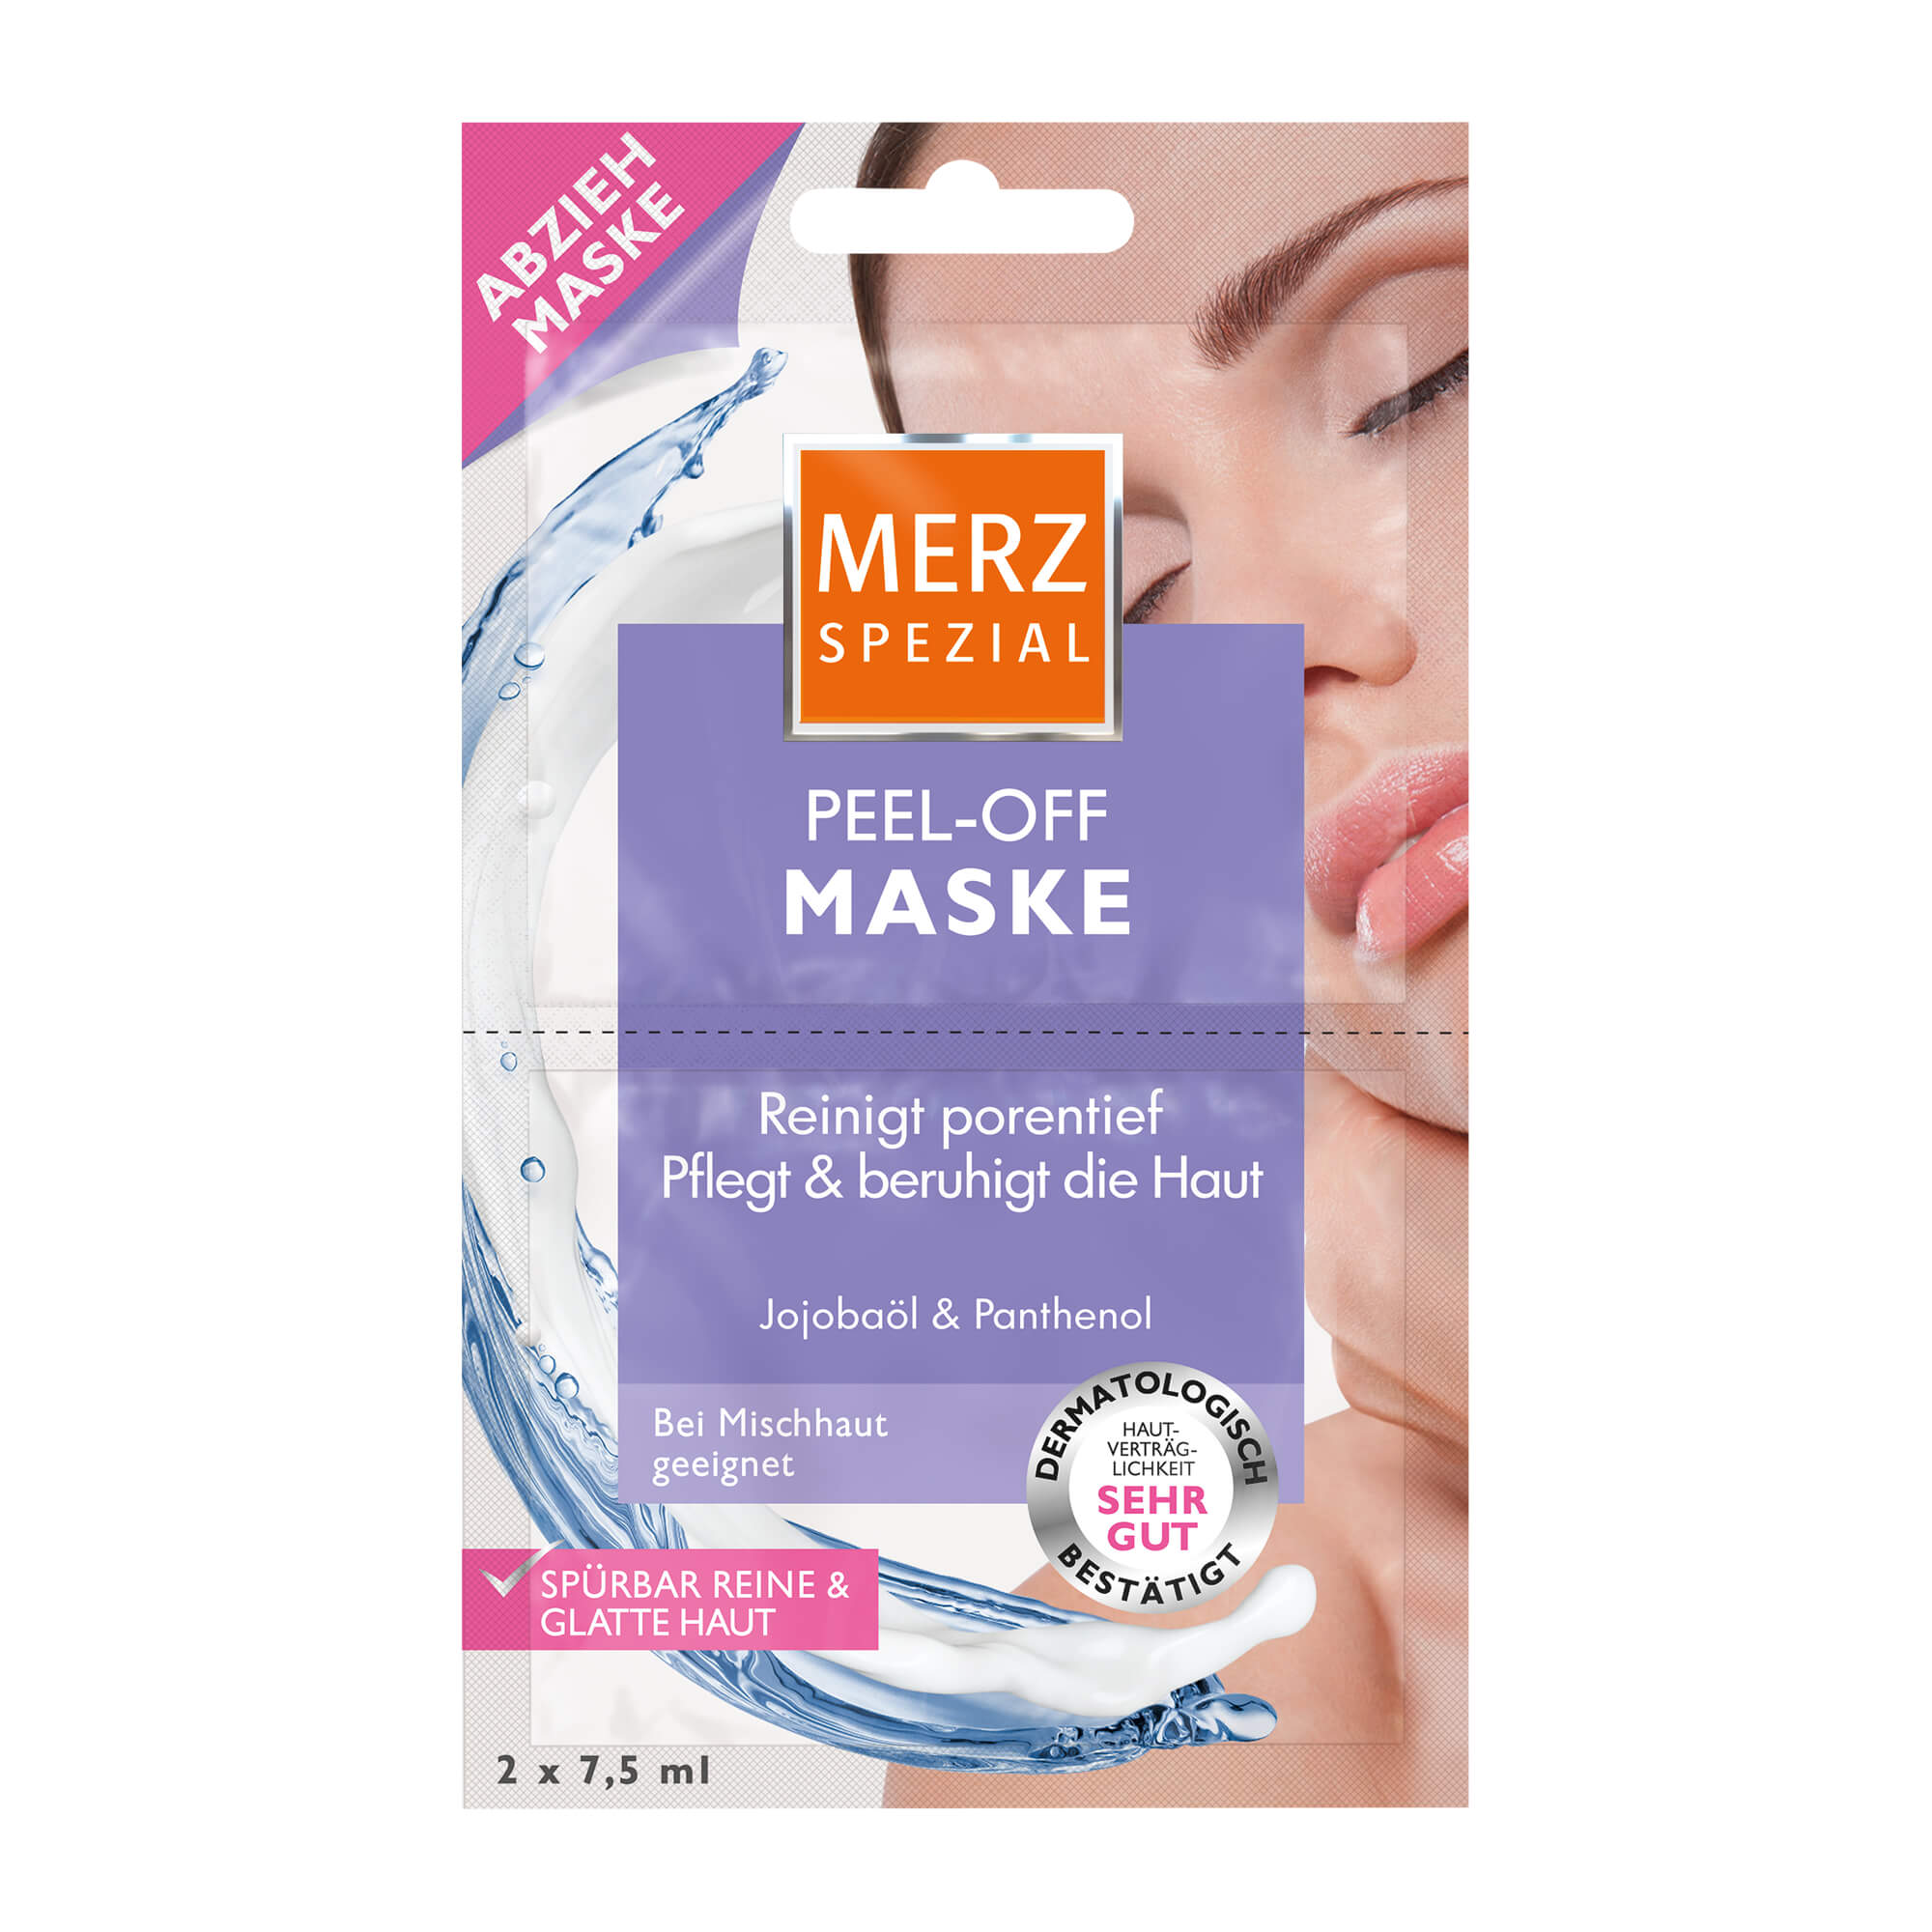 Peel-off Maske mit Jojobaöl, besonders für Mischhaut geeignet.